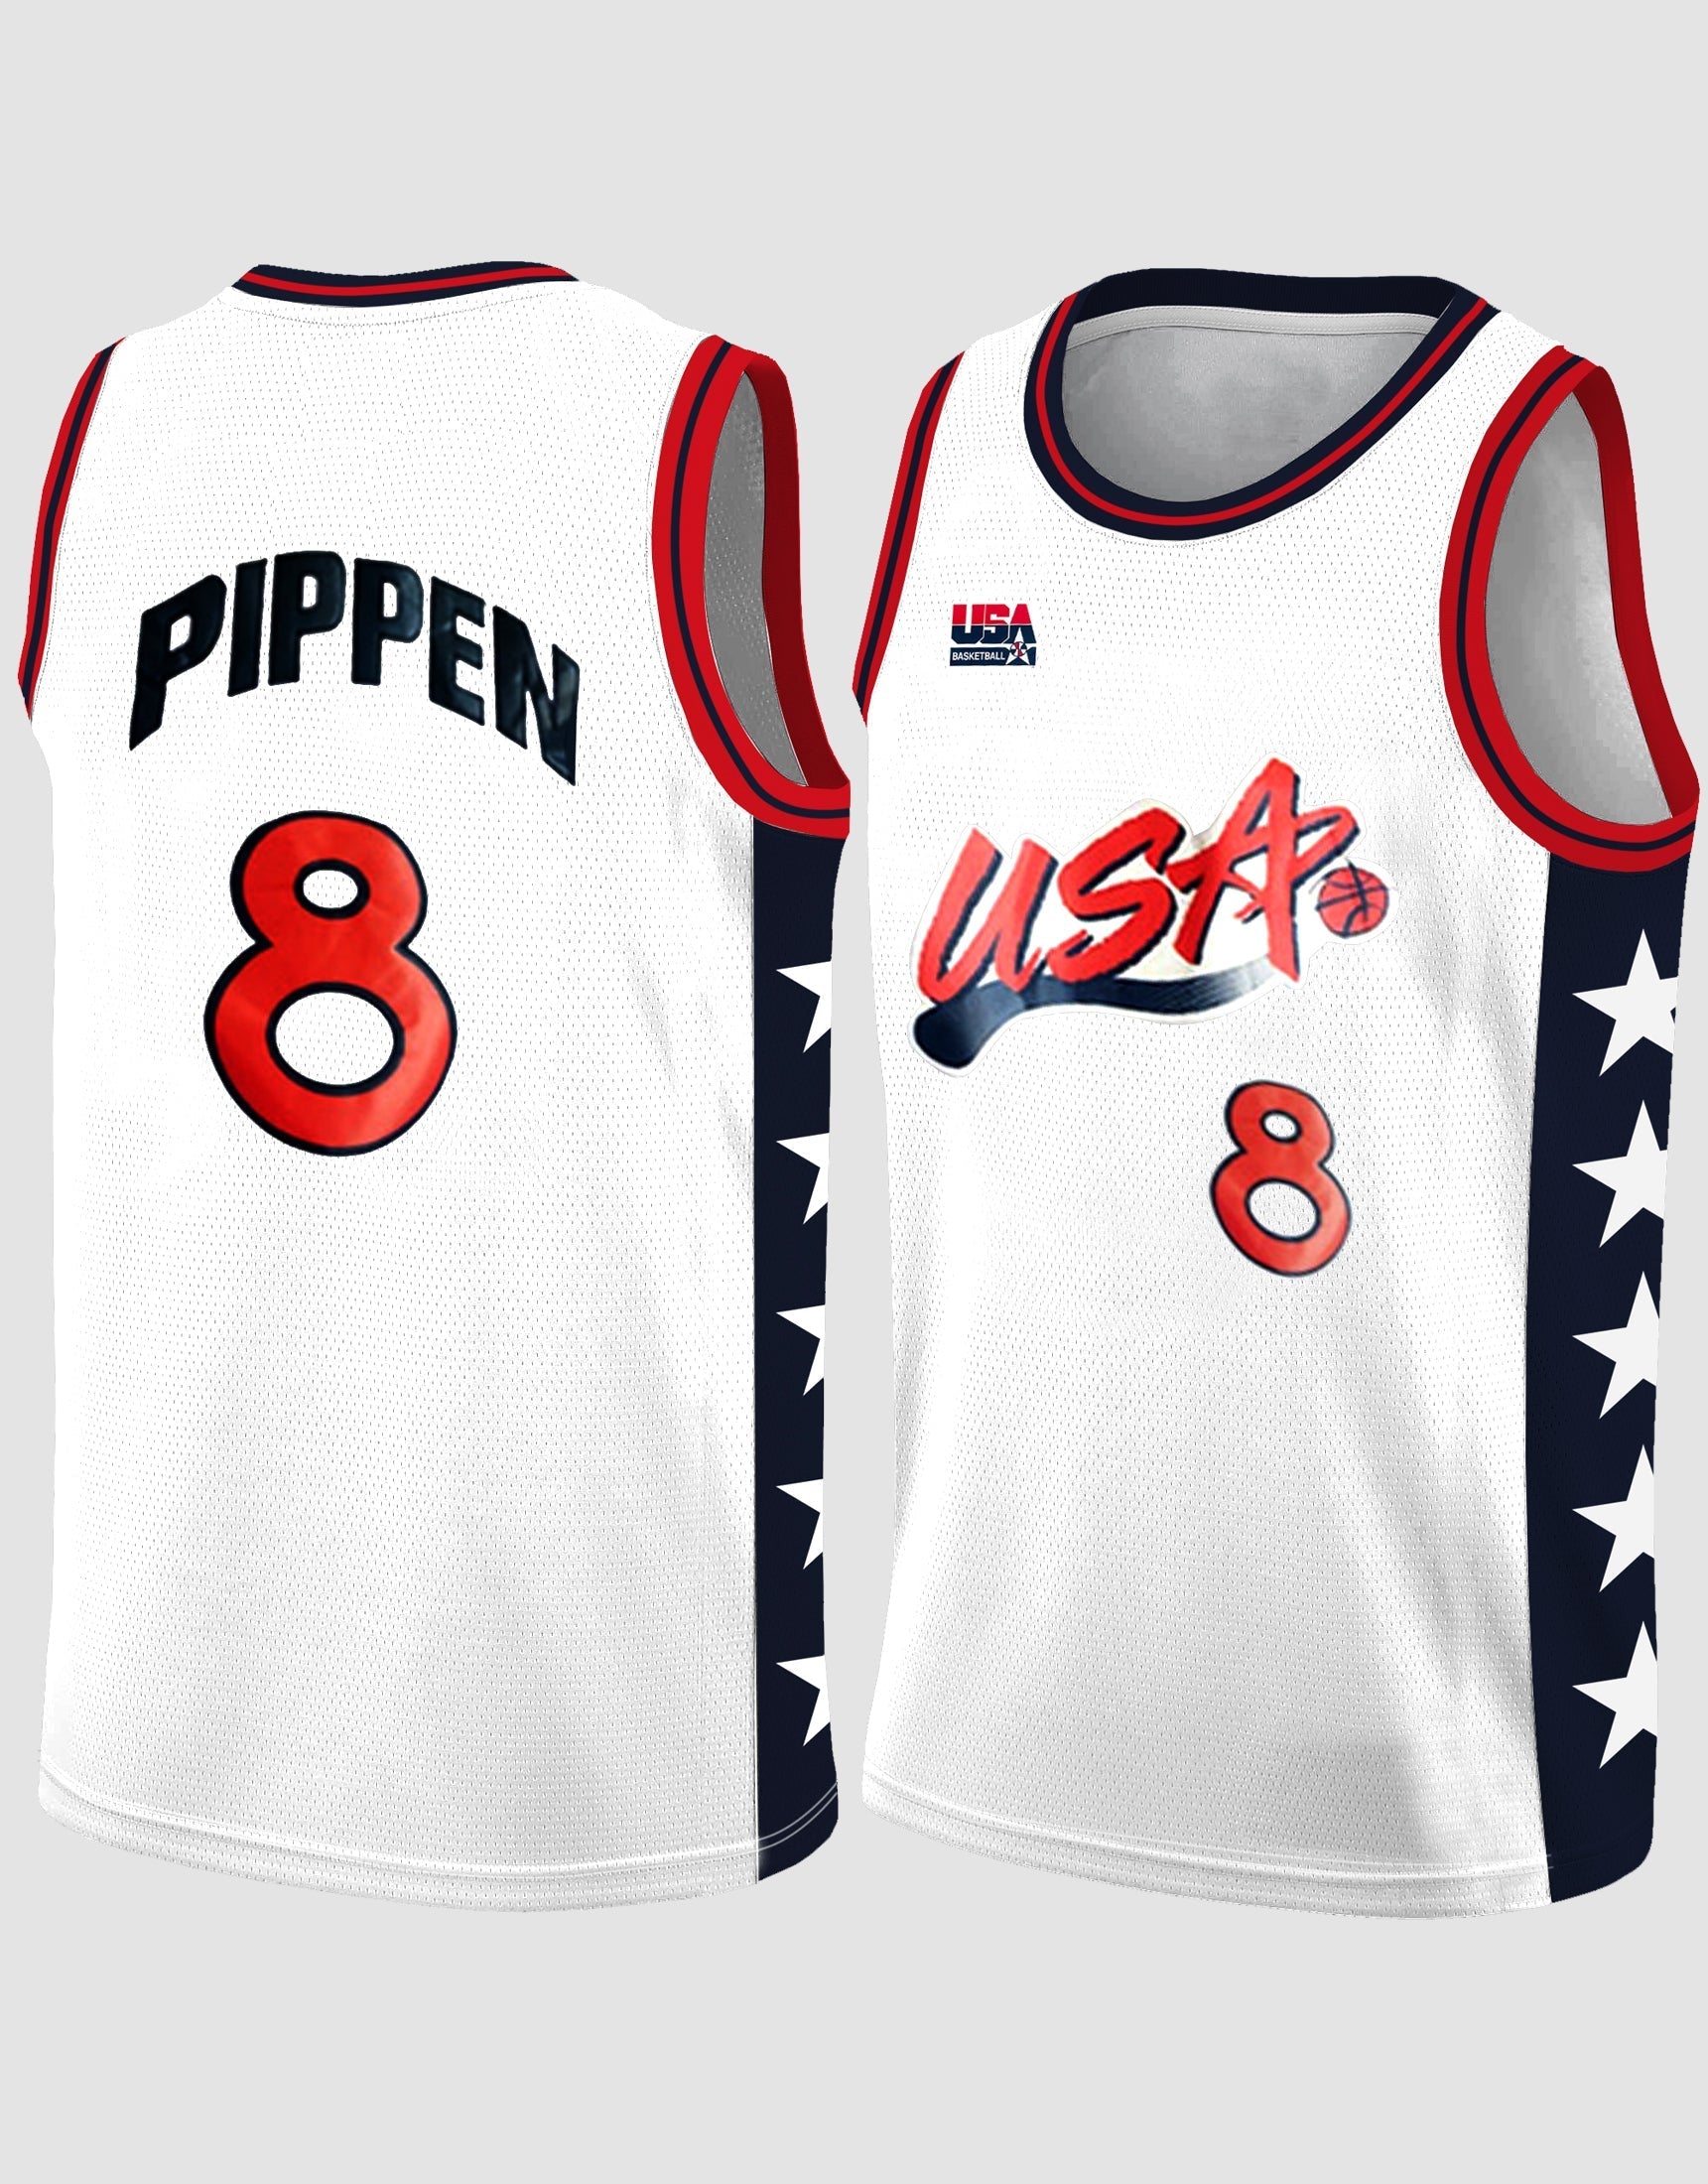 Jersey Spotlight // Scottie Pippen Dream Team II Jersey